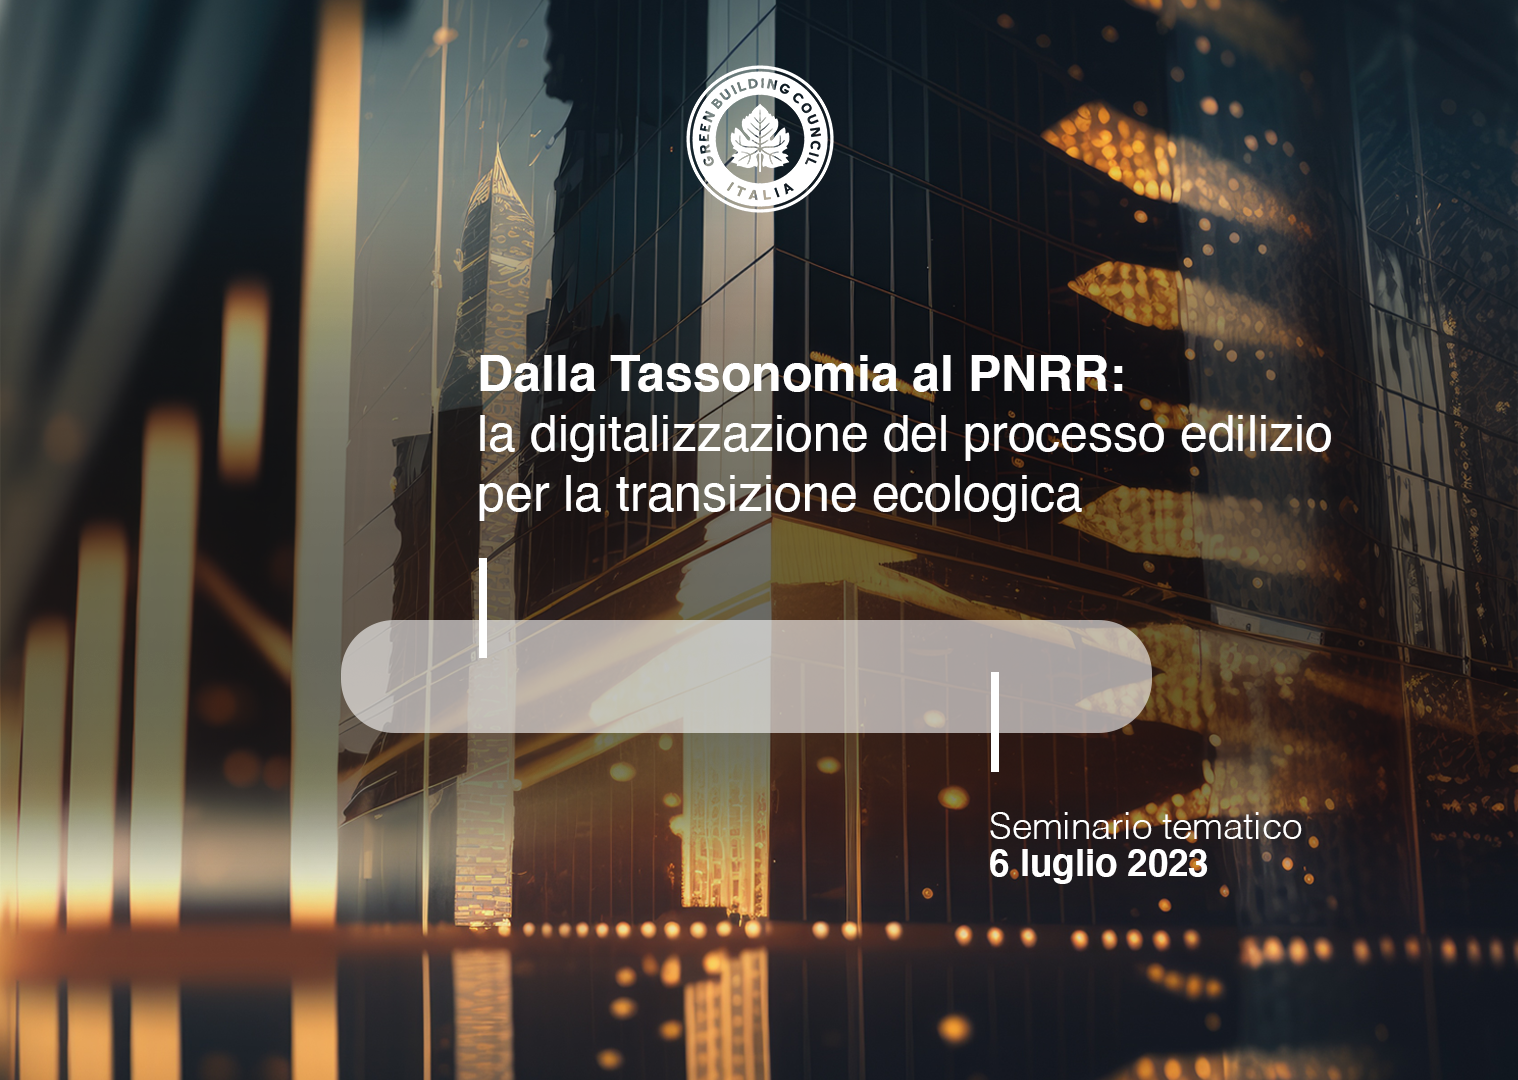 Dalla Tassonomia al PNRR: la digitalizzazione del processo edilizio per la transizione ecologica